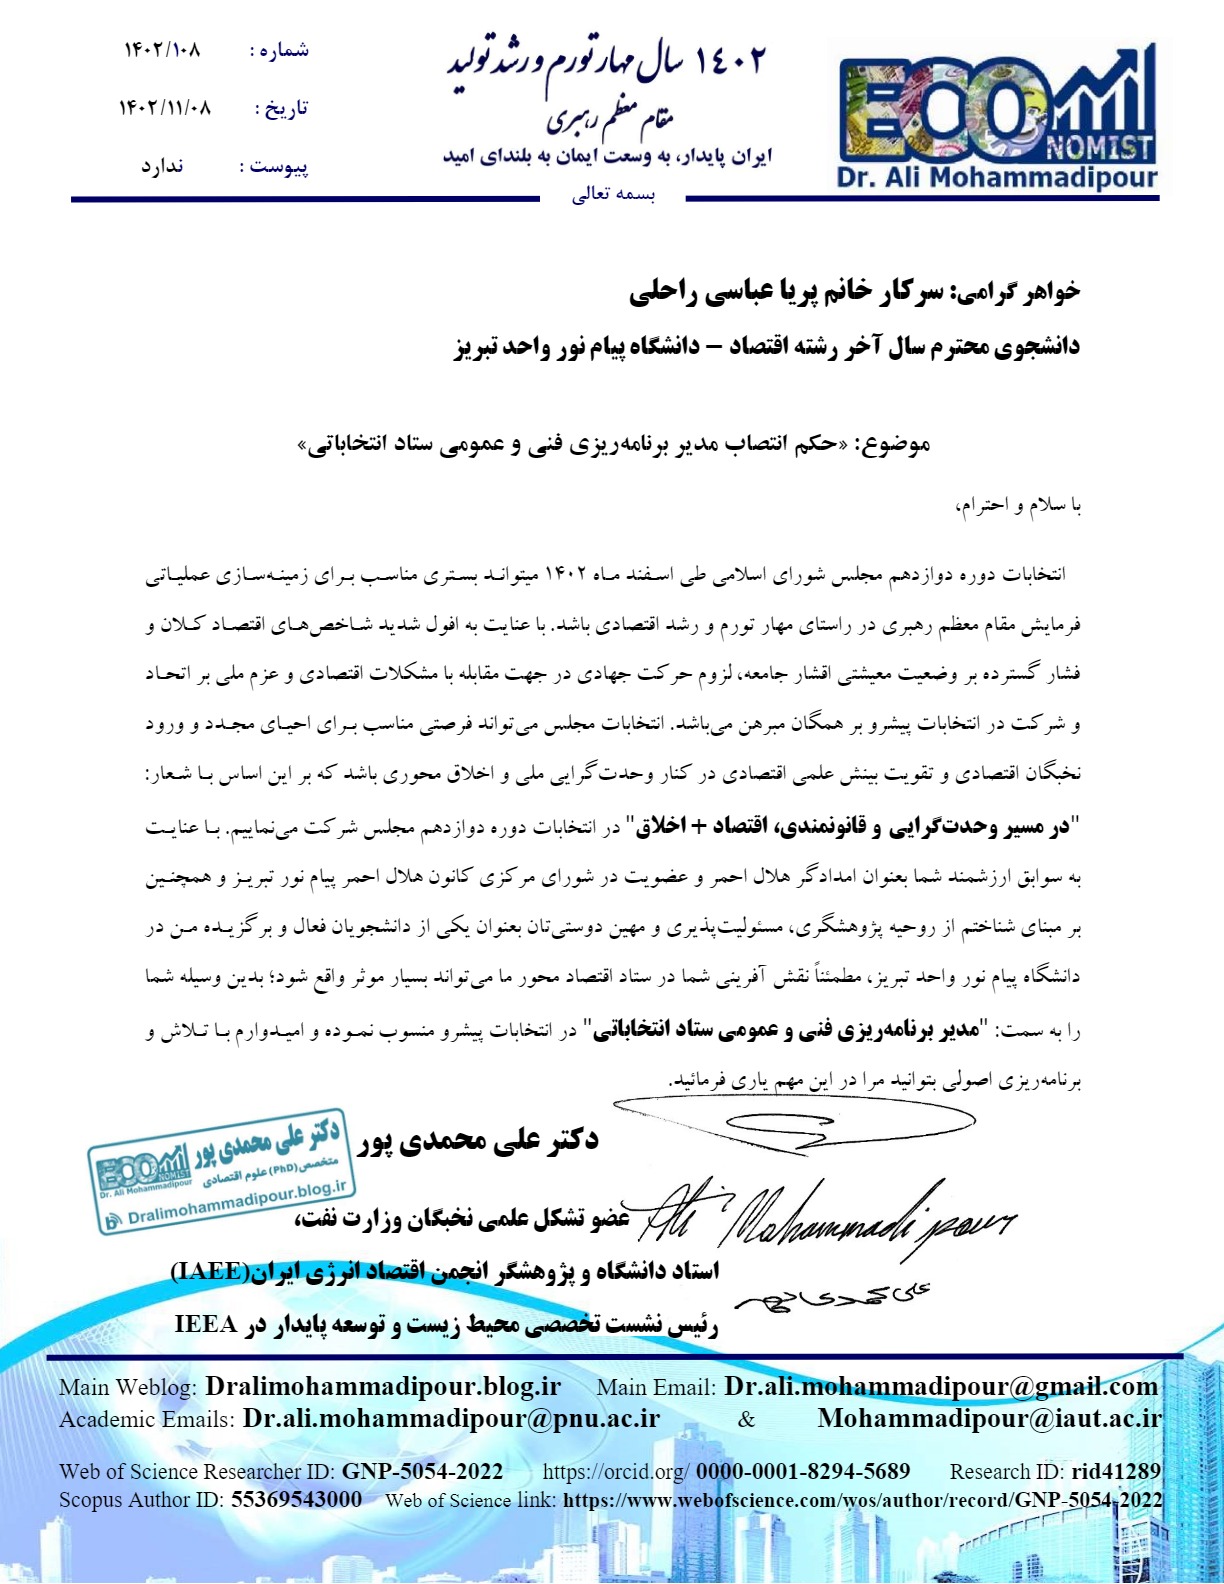 حکم انتصاب سرکار خانم پریا عباسی راحلی بعنوان مدیر برنامه ریزی فنی و عمومی ستاد دکتر علی محمدی پور صادر گردید.